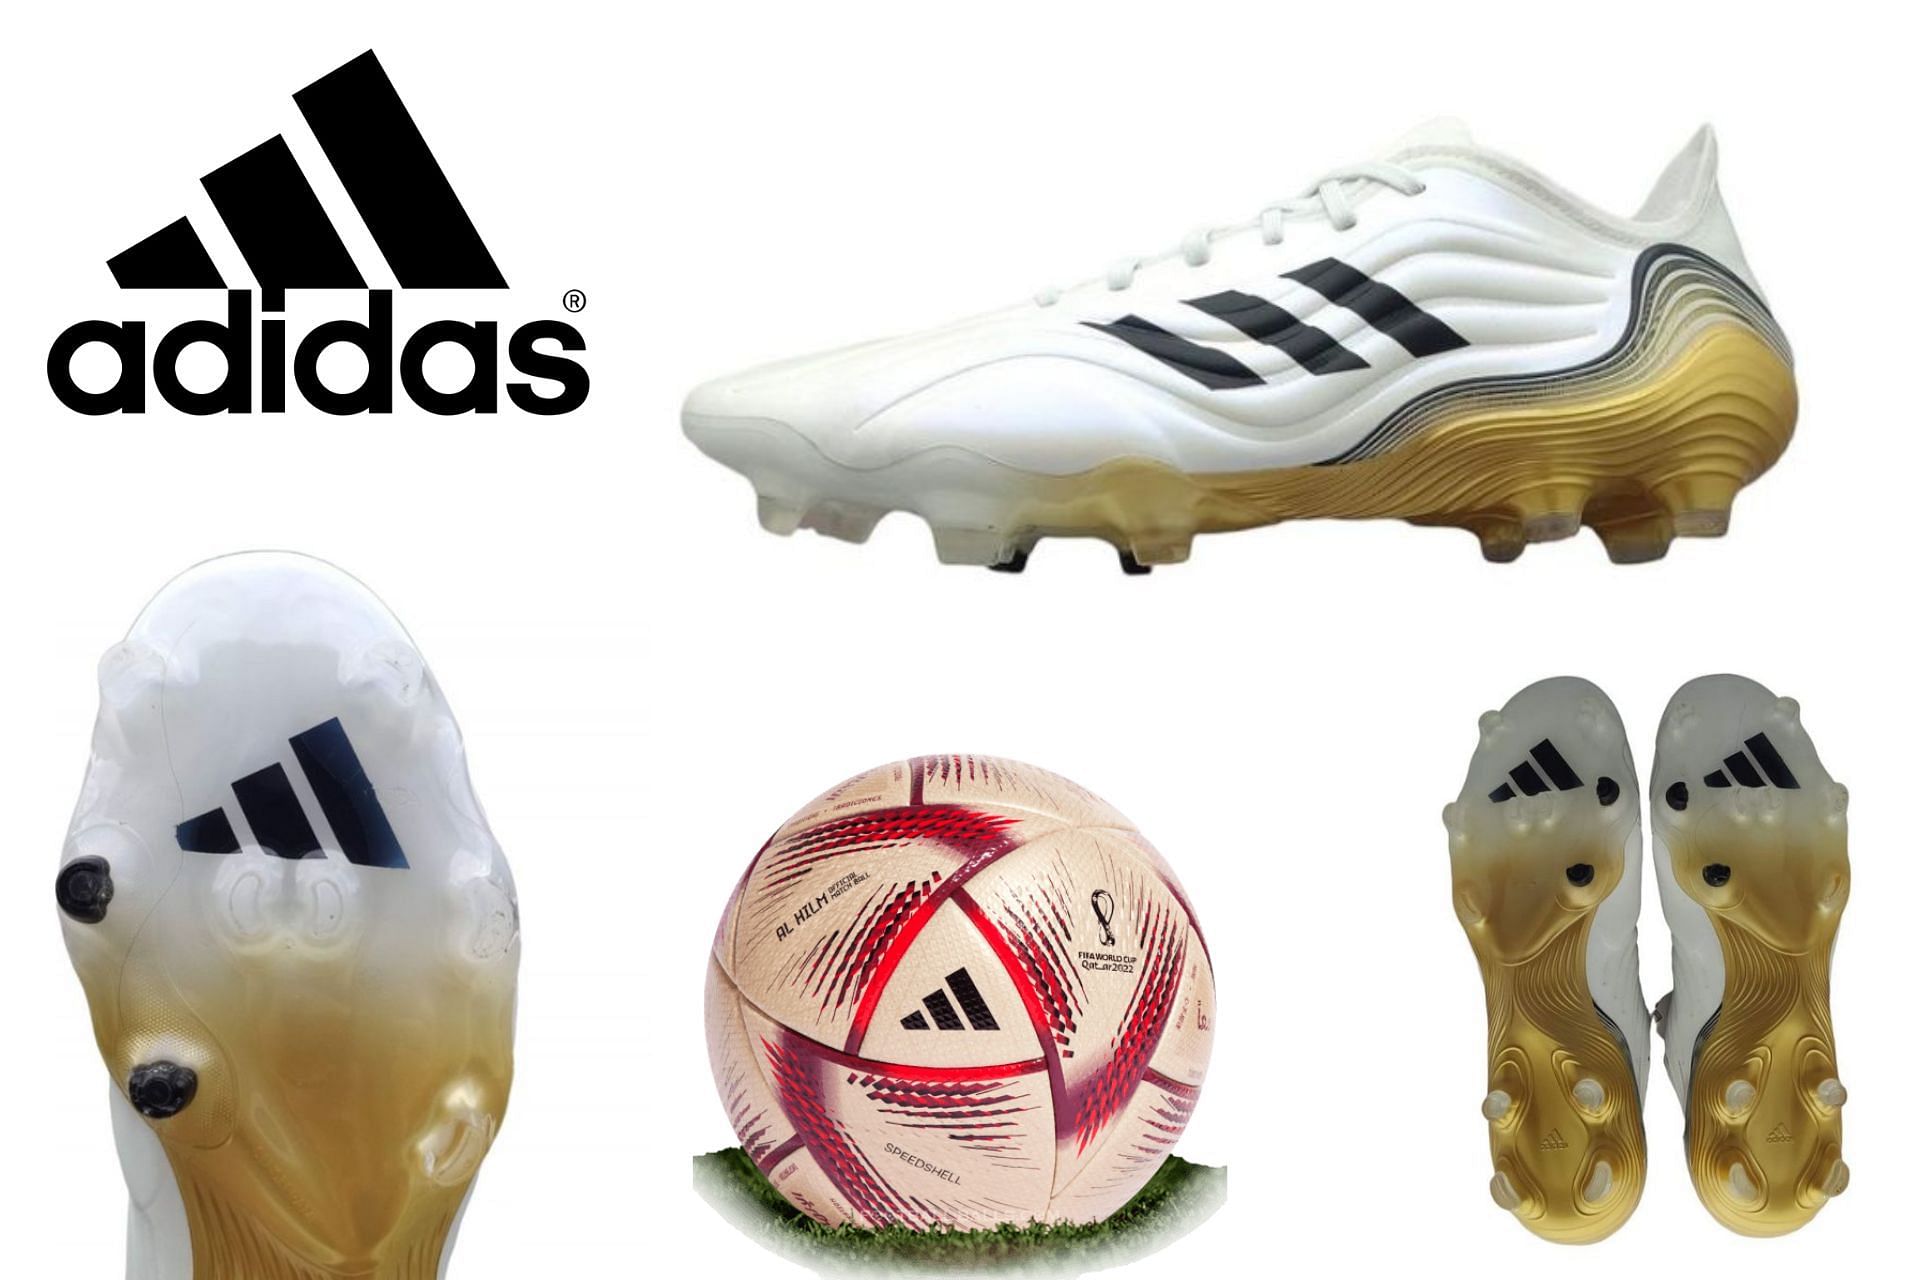 Adidas AL HILM Copa Football boots pack (Image via Sportskeeda)